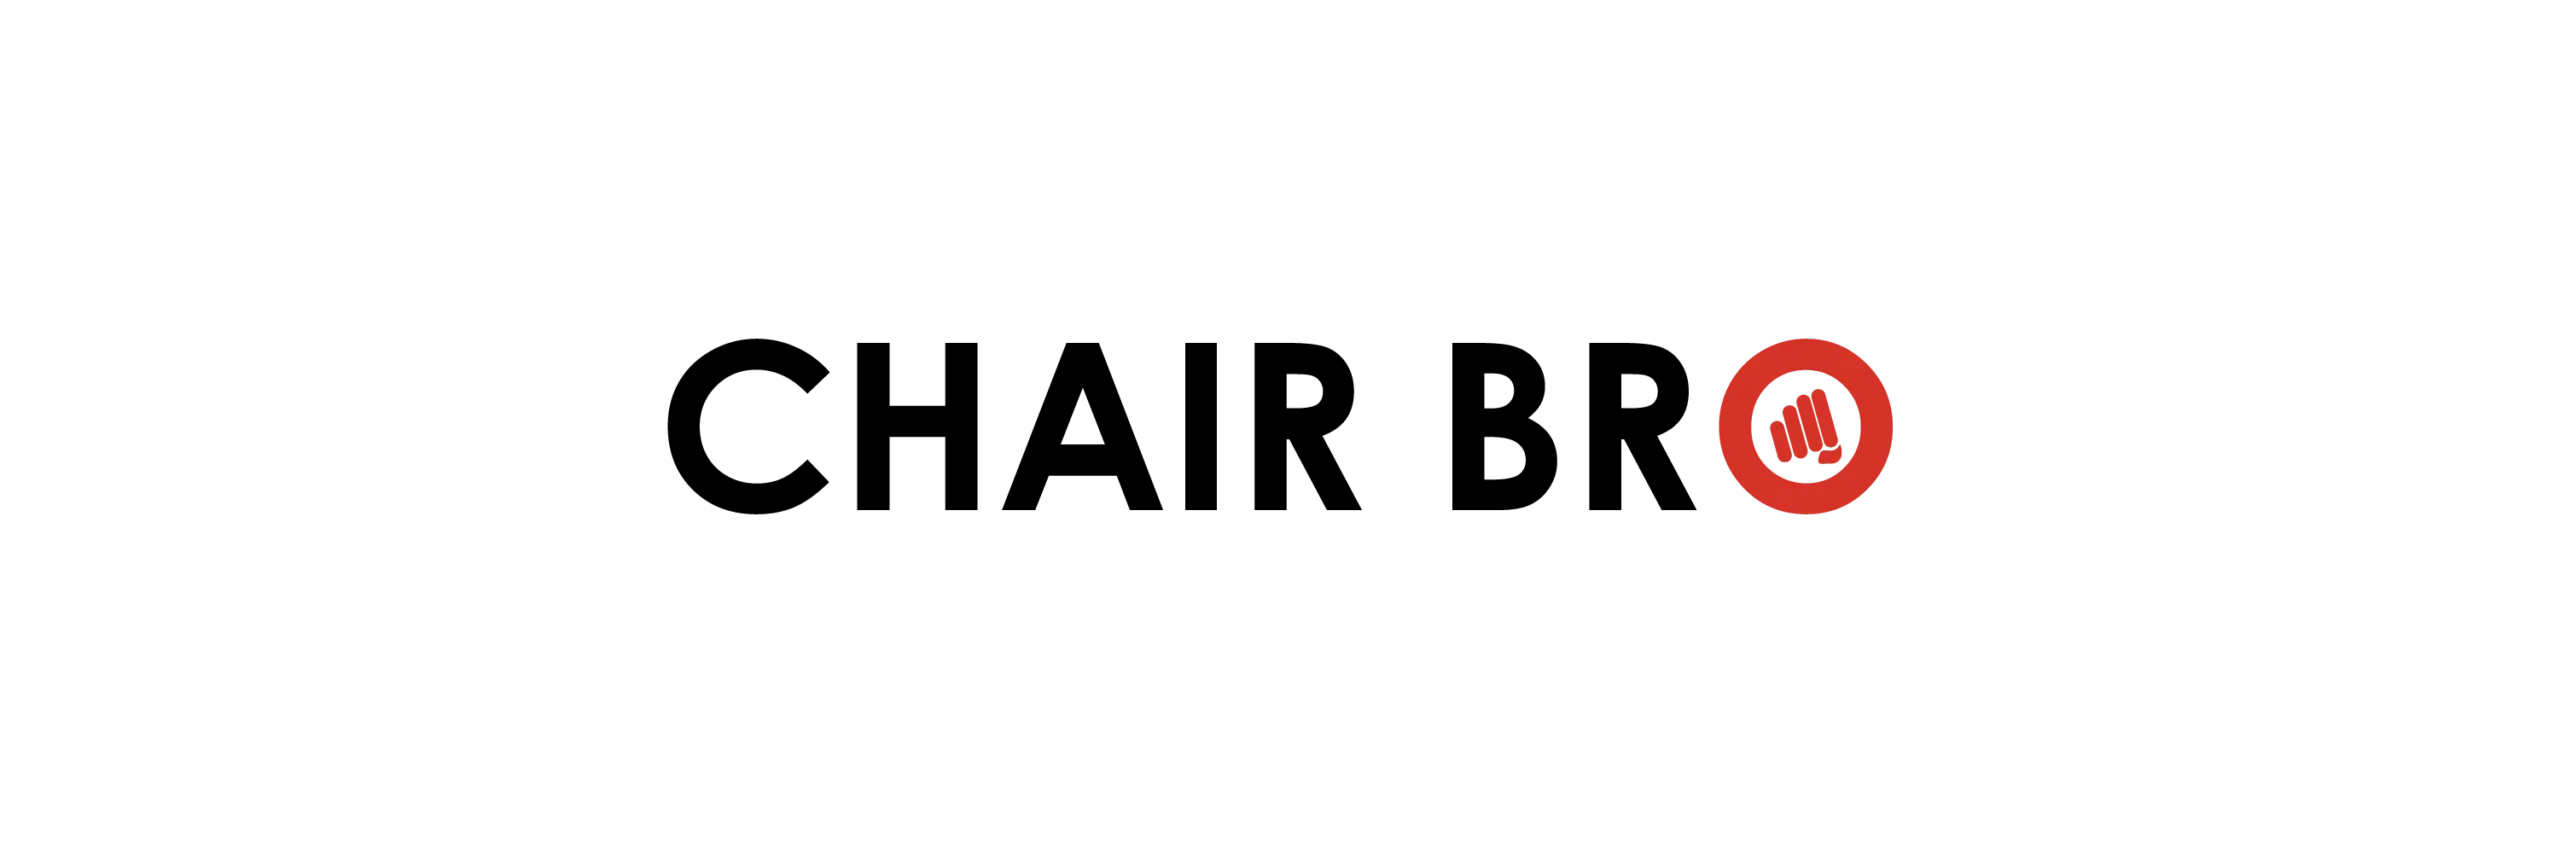 chairbro logo